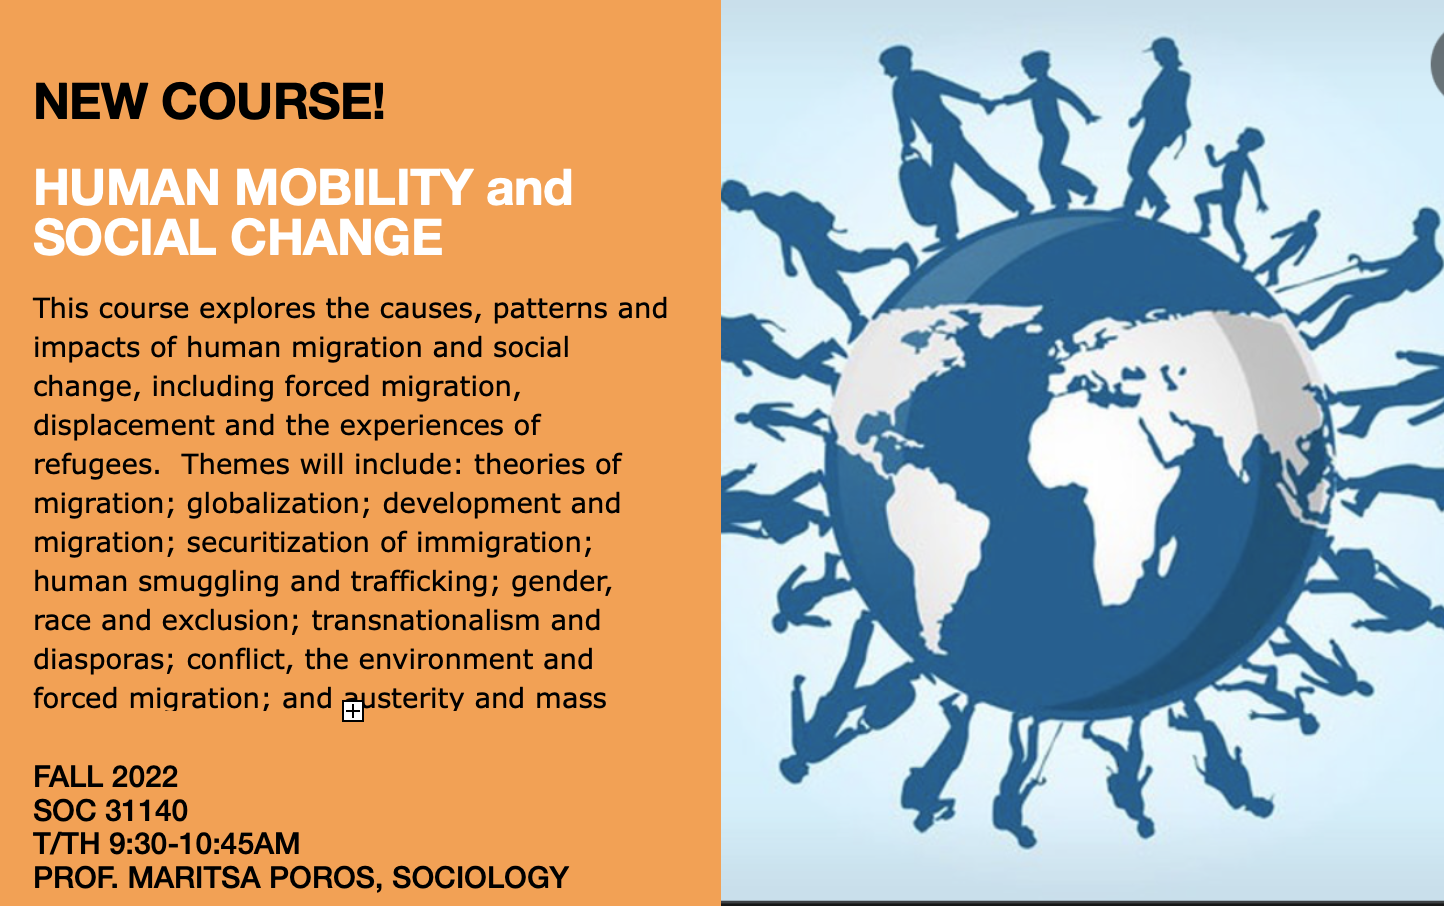 Human Mobility and Social Change Course Description